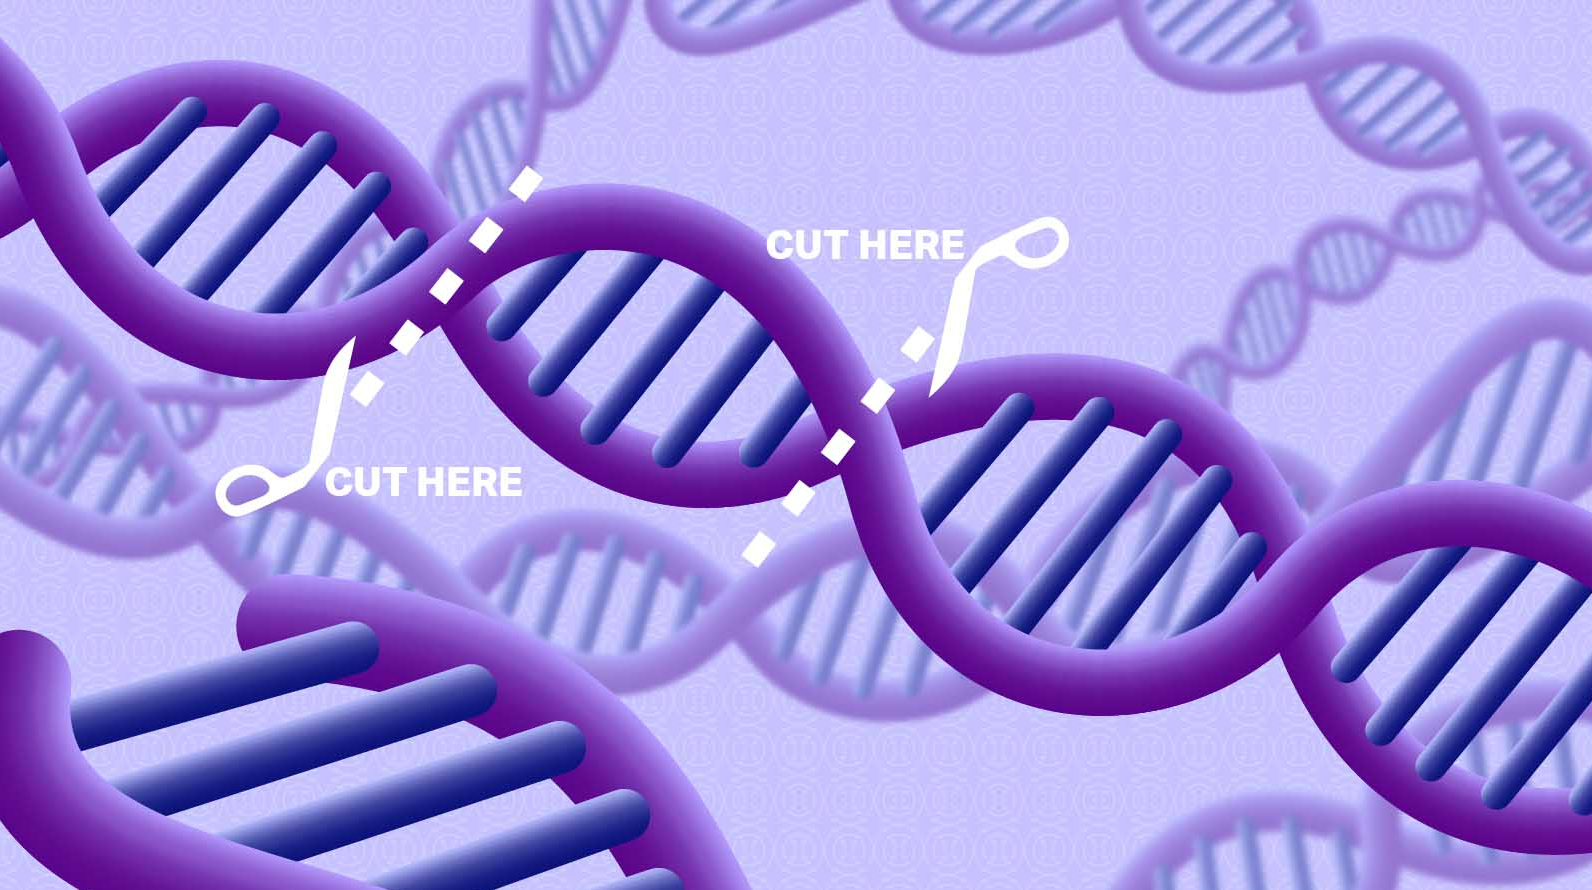 【Nature子刊】小心！CRISPR疗法弄丢大量的遗传物质